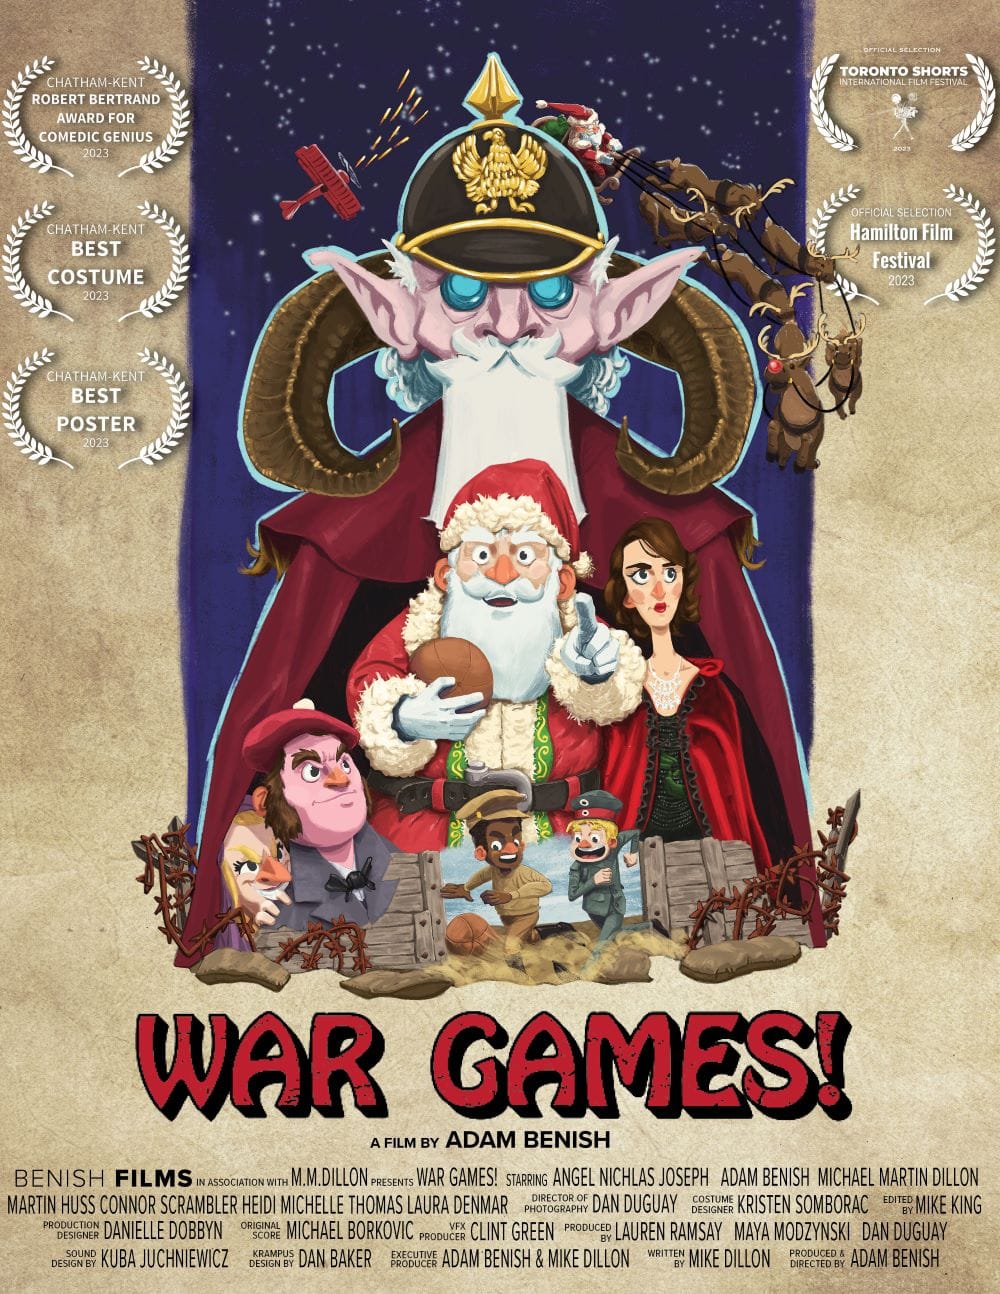 War Games! A Christmas Truce